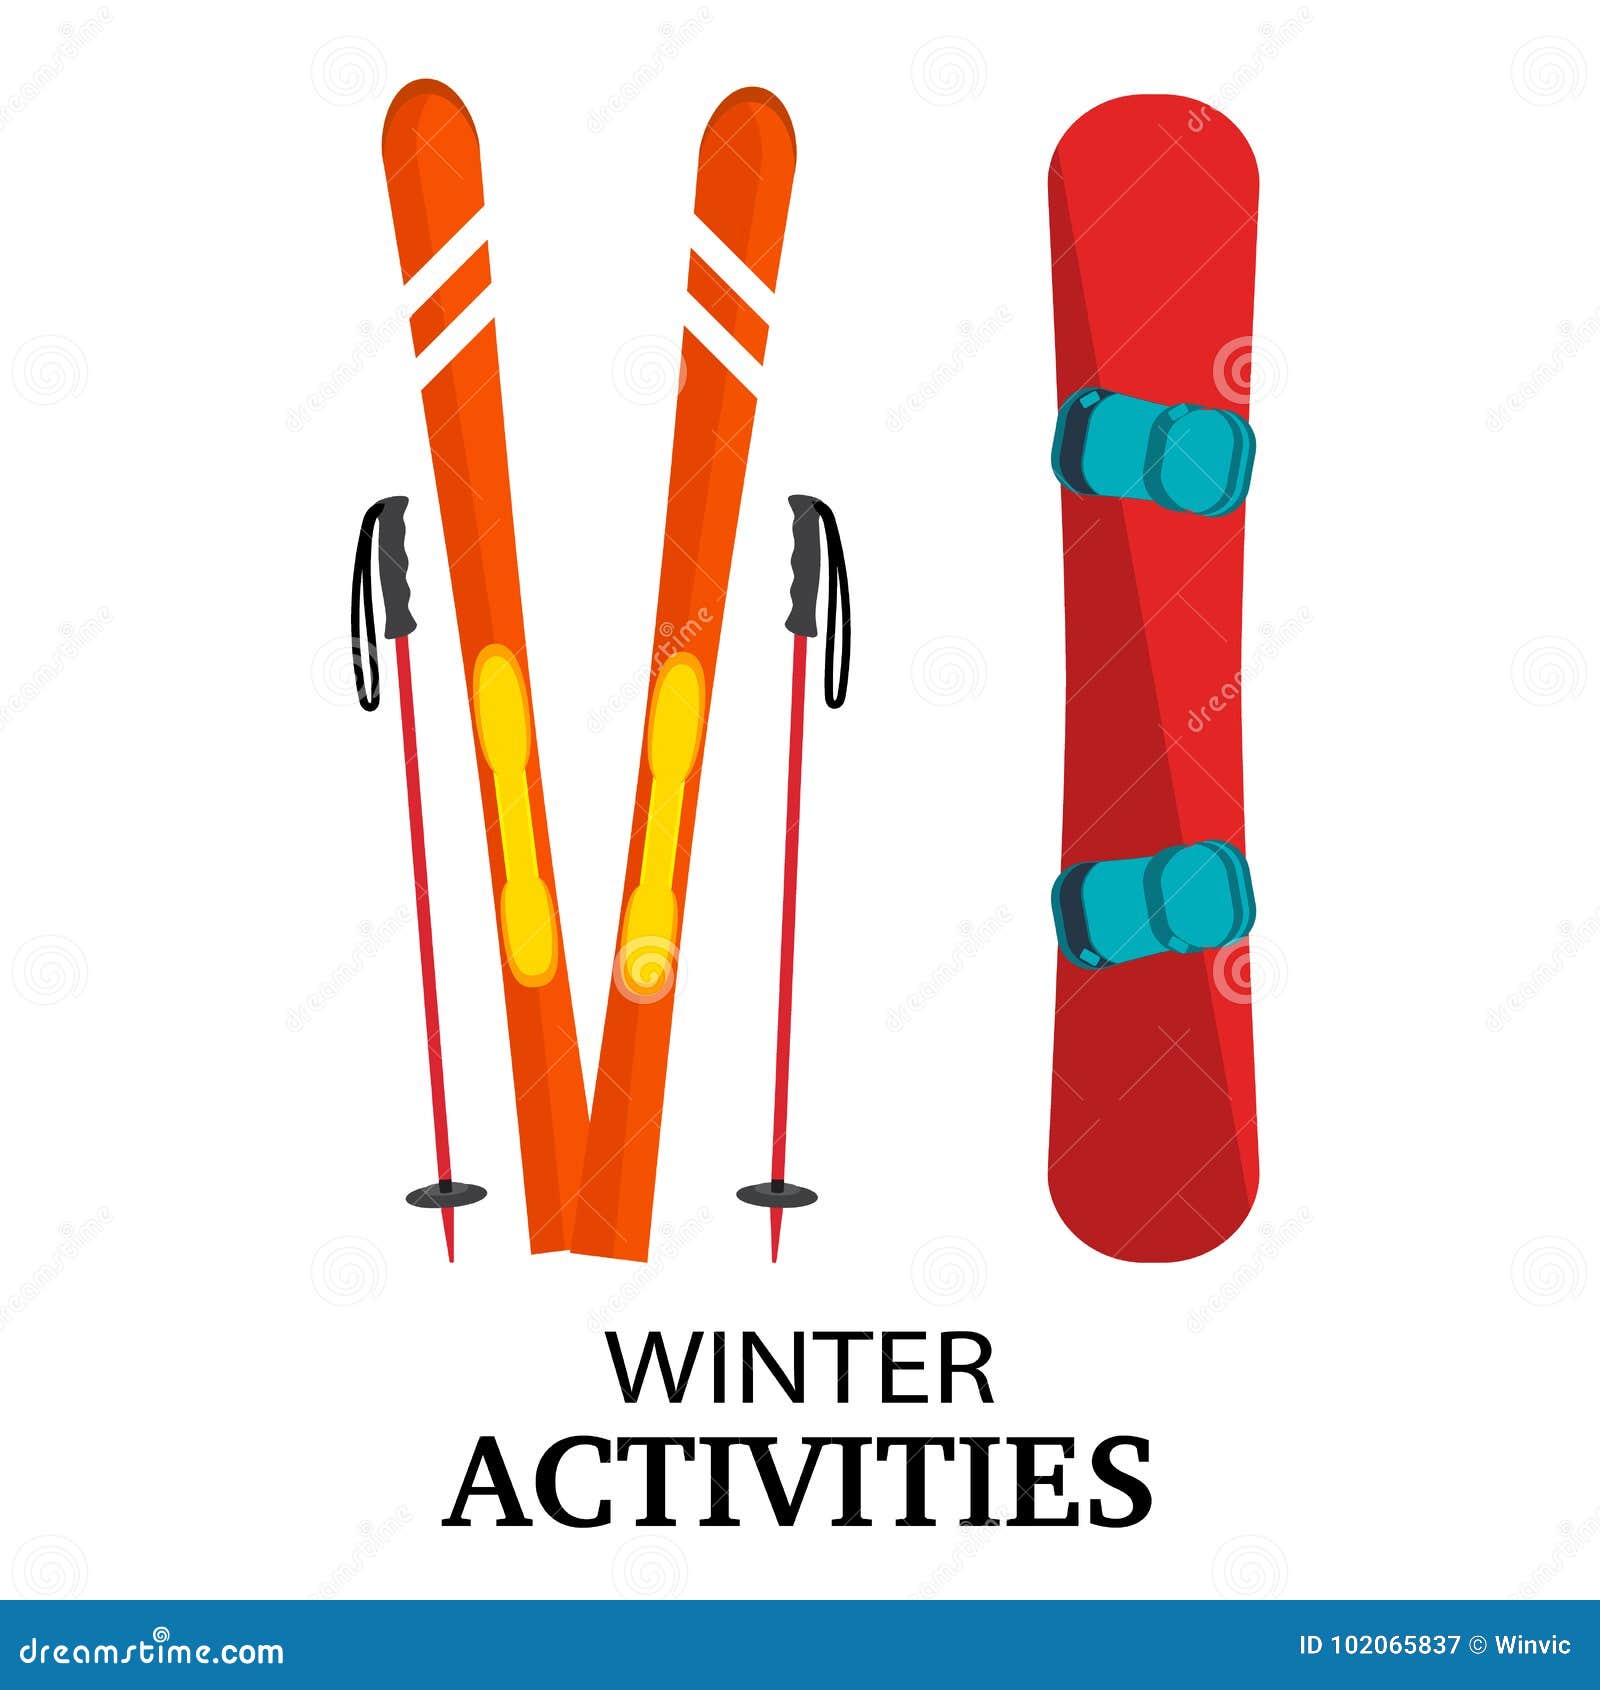 Сноуборды лыжи и палки перевозятся. Лыжи спереди вектор. Сноуборд доска вектор. Flat сноуборд. Лыжи и палки вектор.